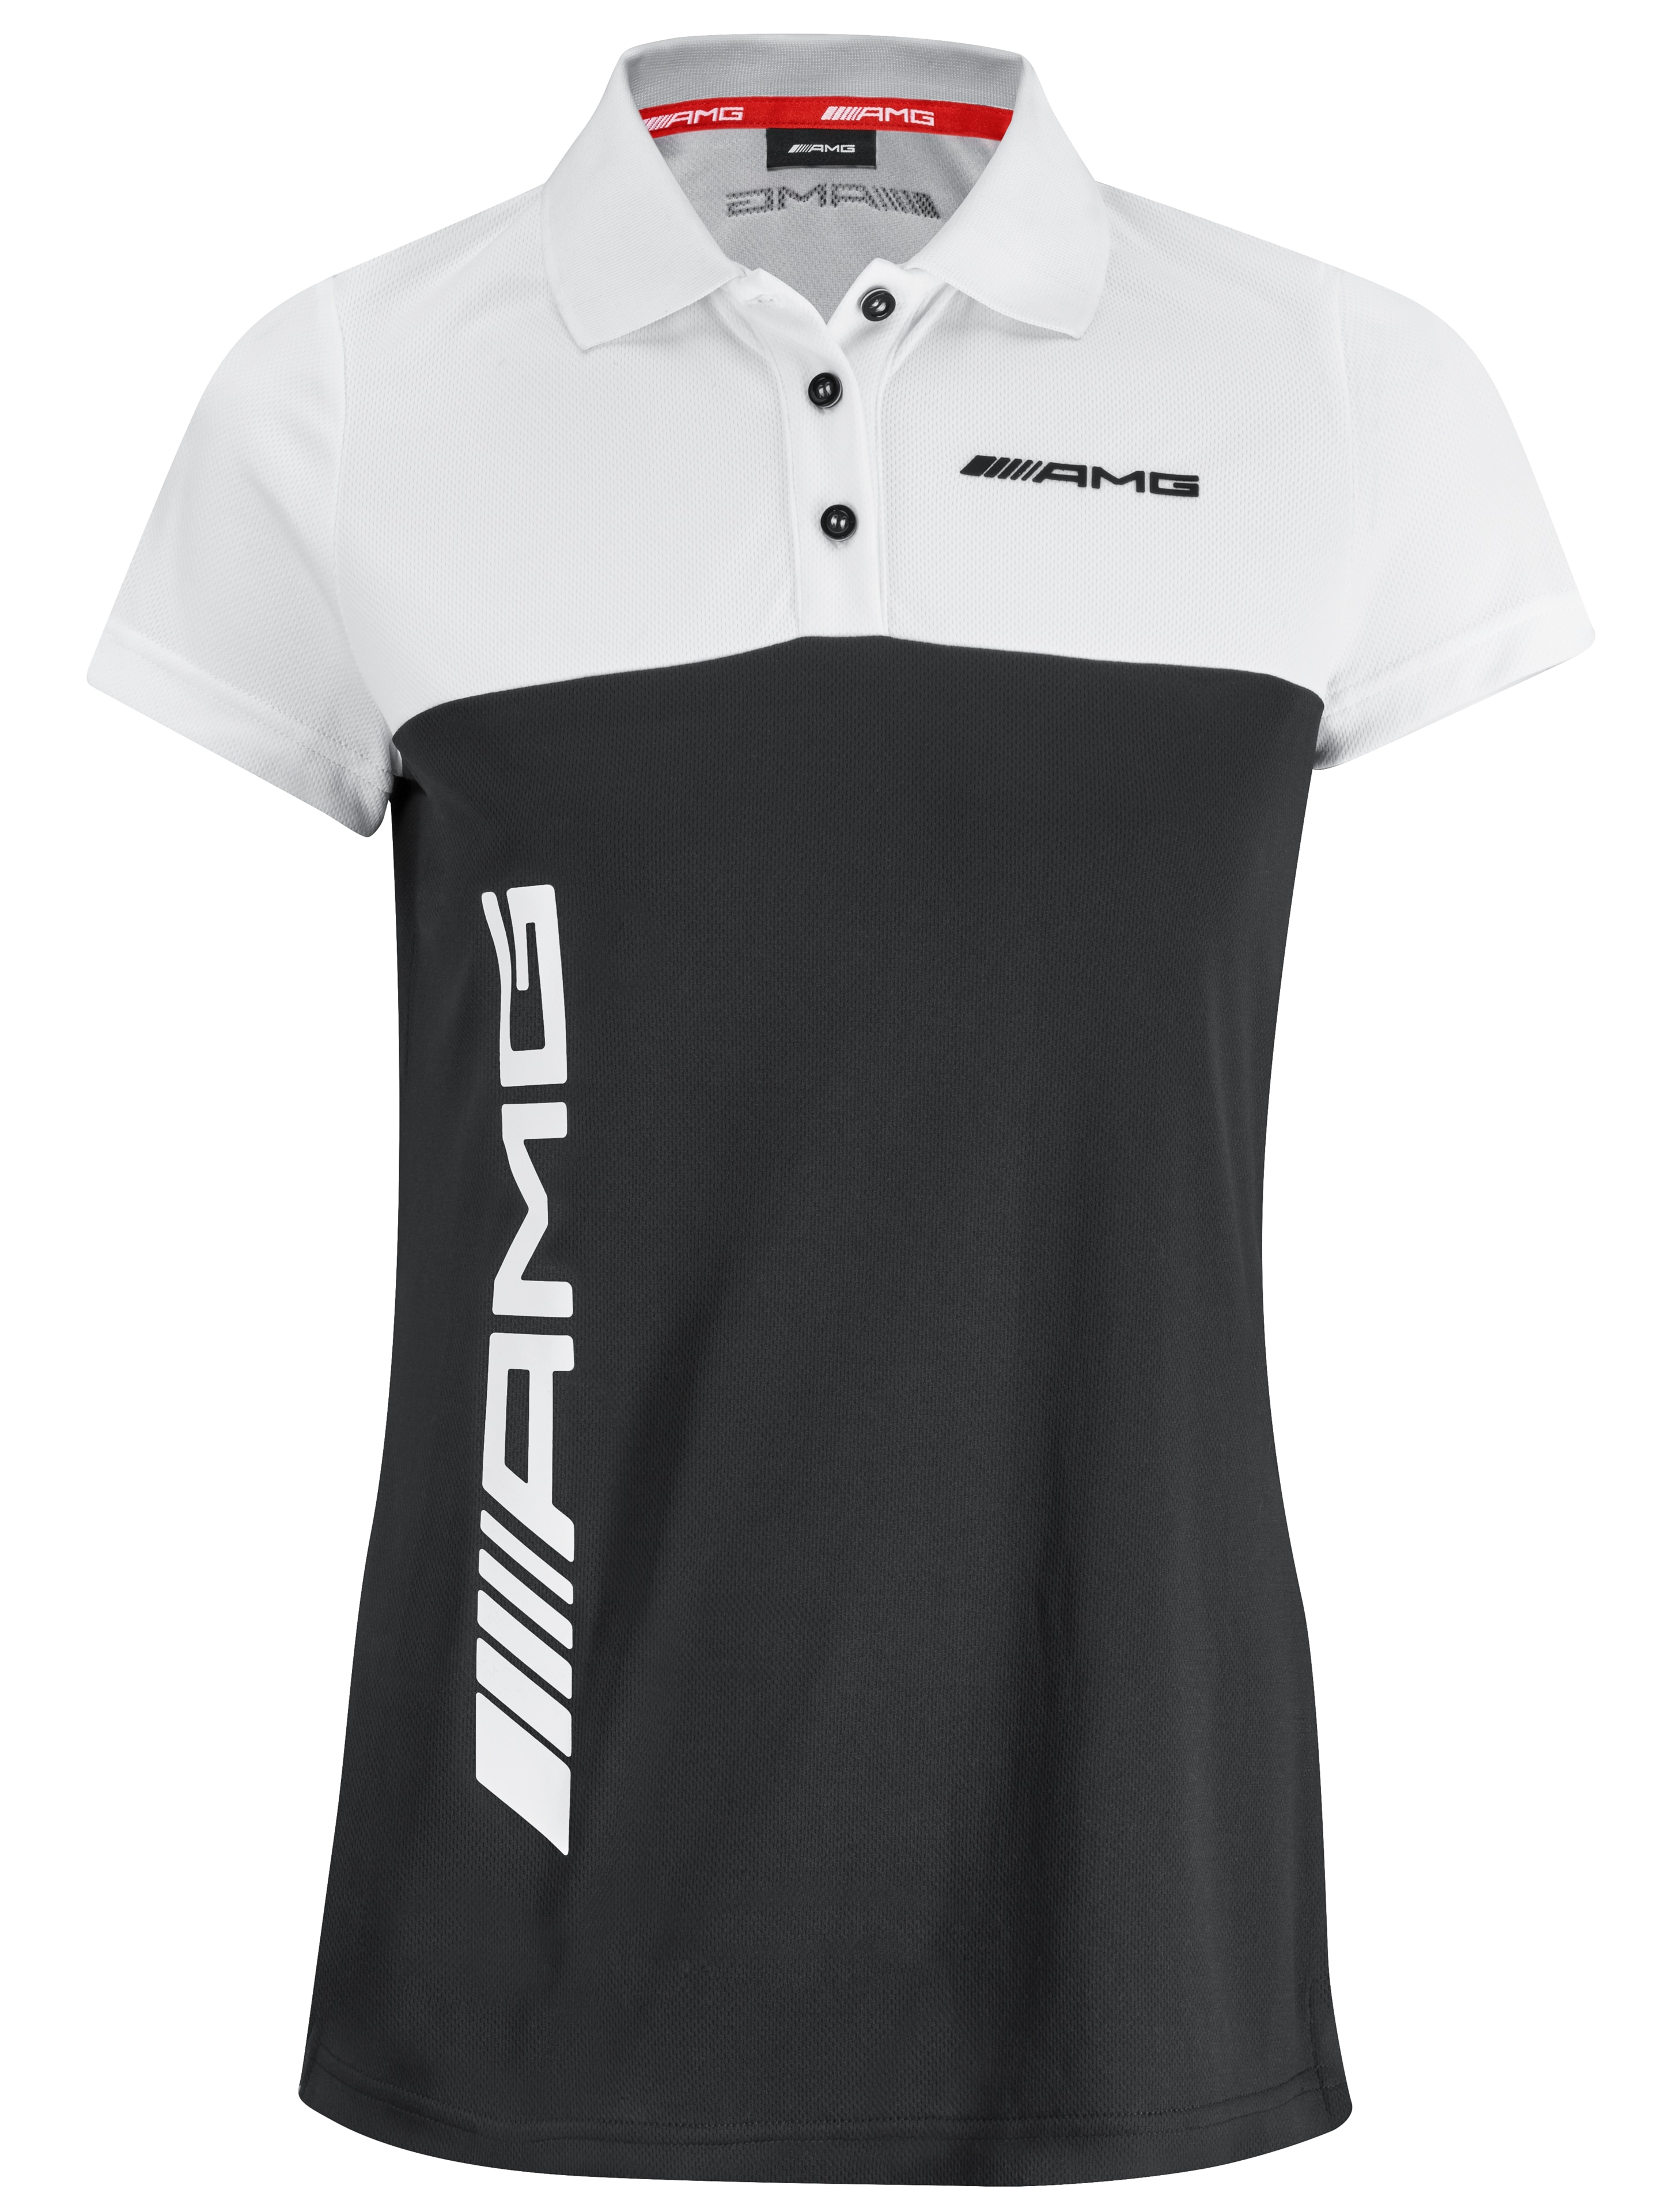 AMG Poloshirt Damen - schwarz / weiß, XL